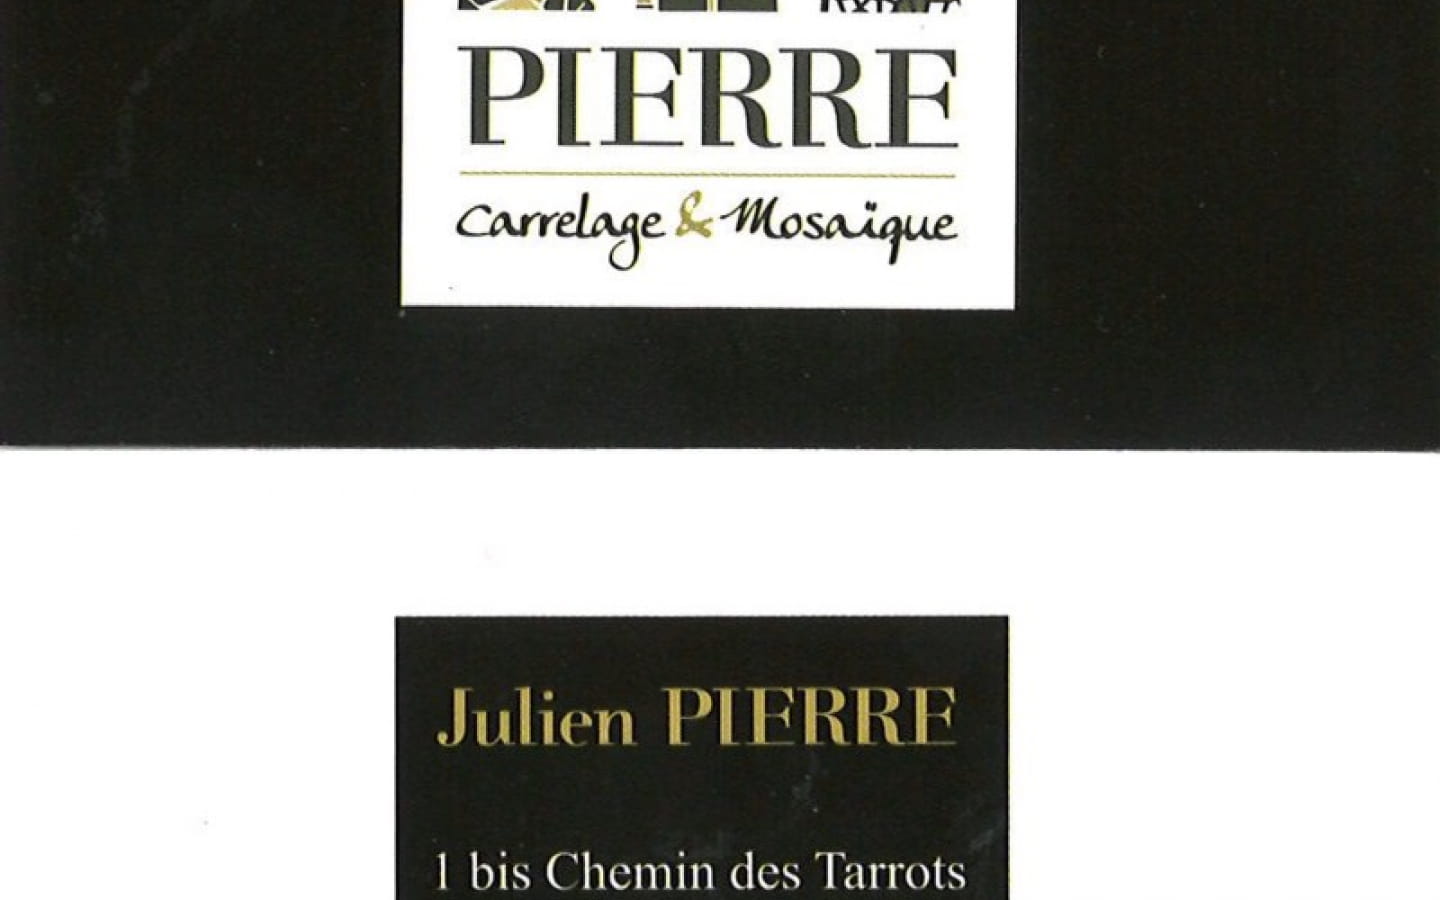 Pierre carrelage & mosaïque